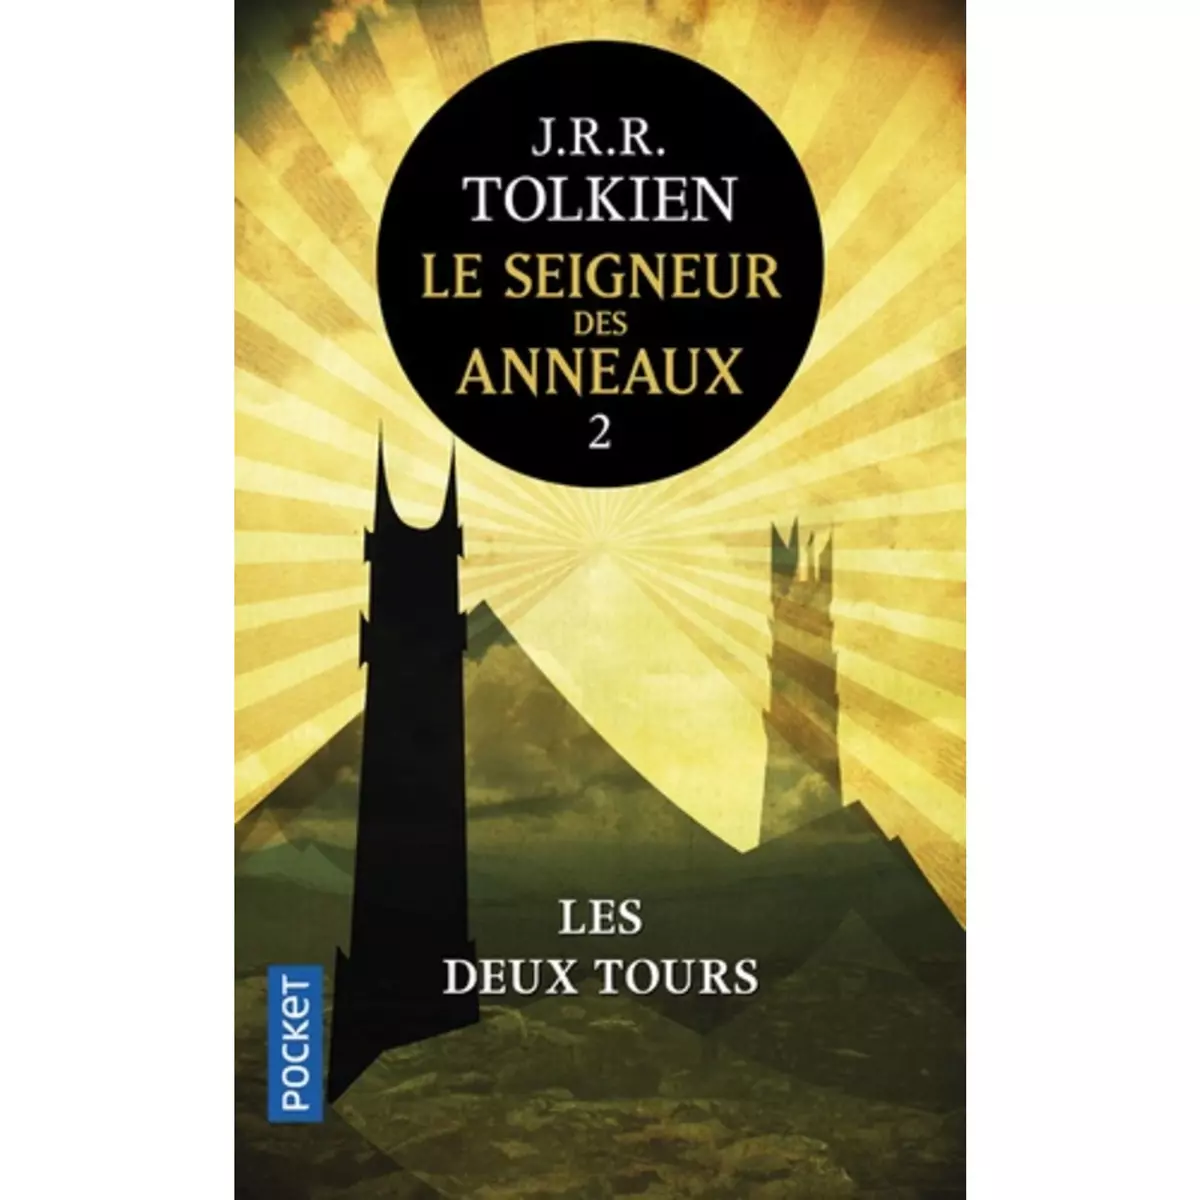  LE SEIGNEUR DES ANNEAUX TOME 2 : LES DEUX TOURS, Tolkien John Ronald Reuel